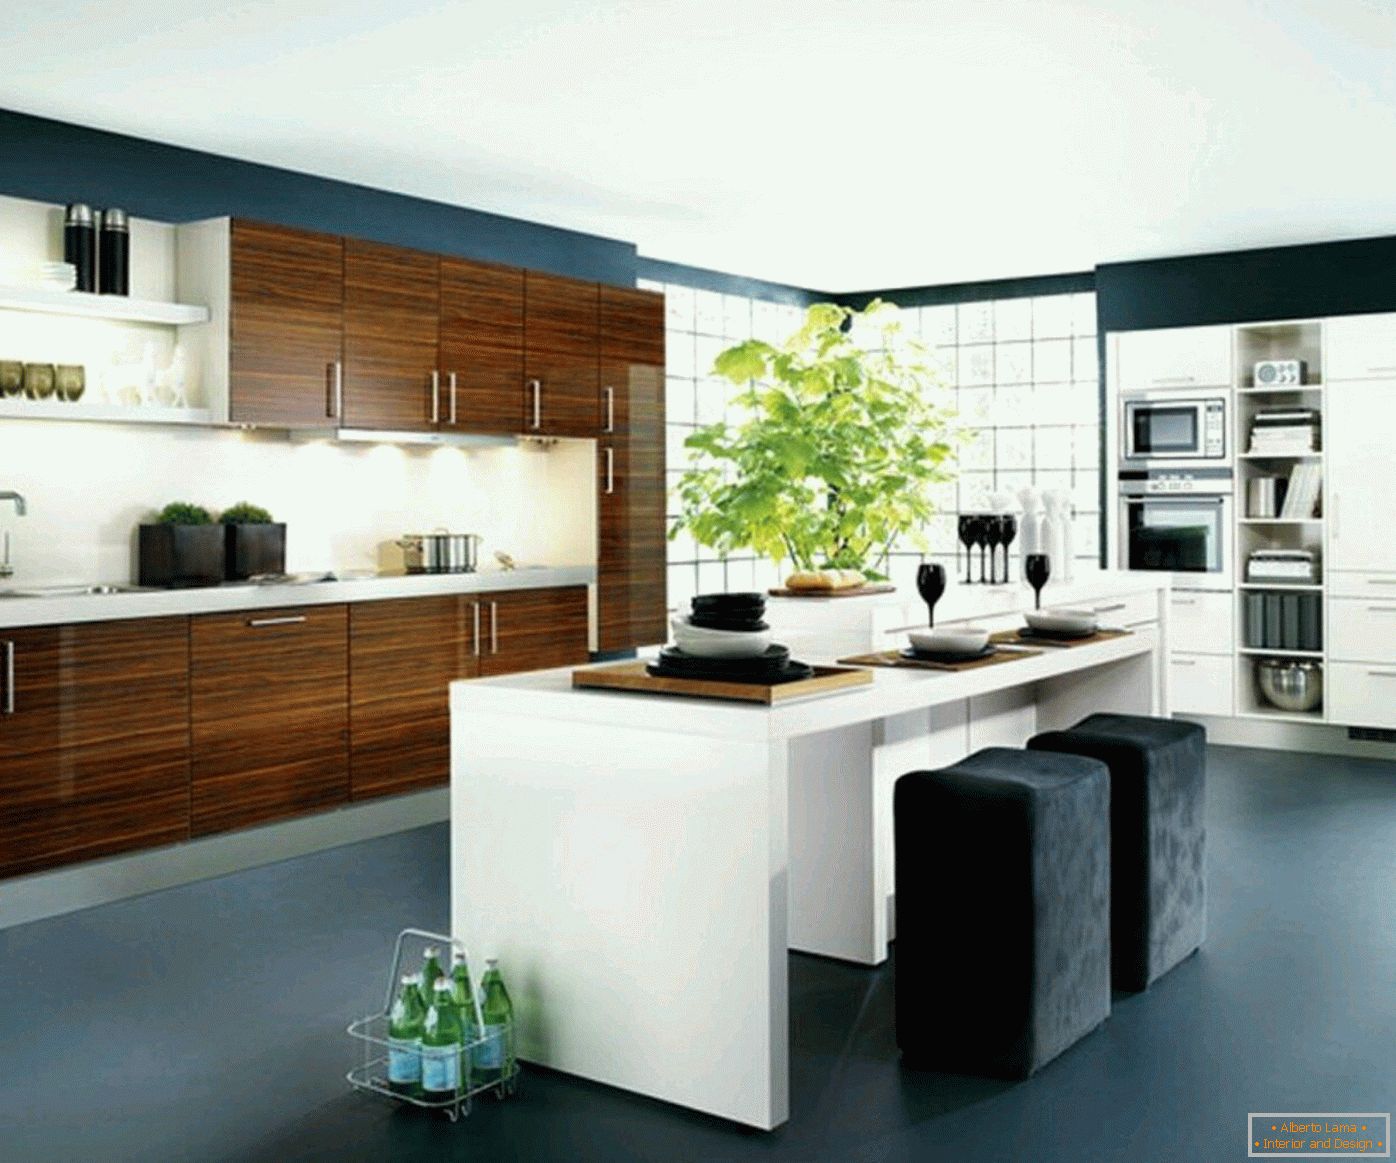 Design moderno da cozinha